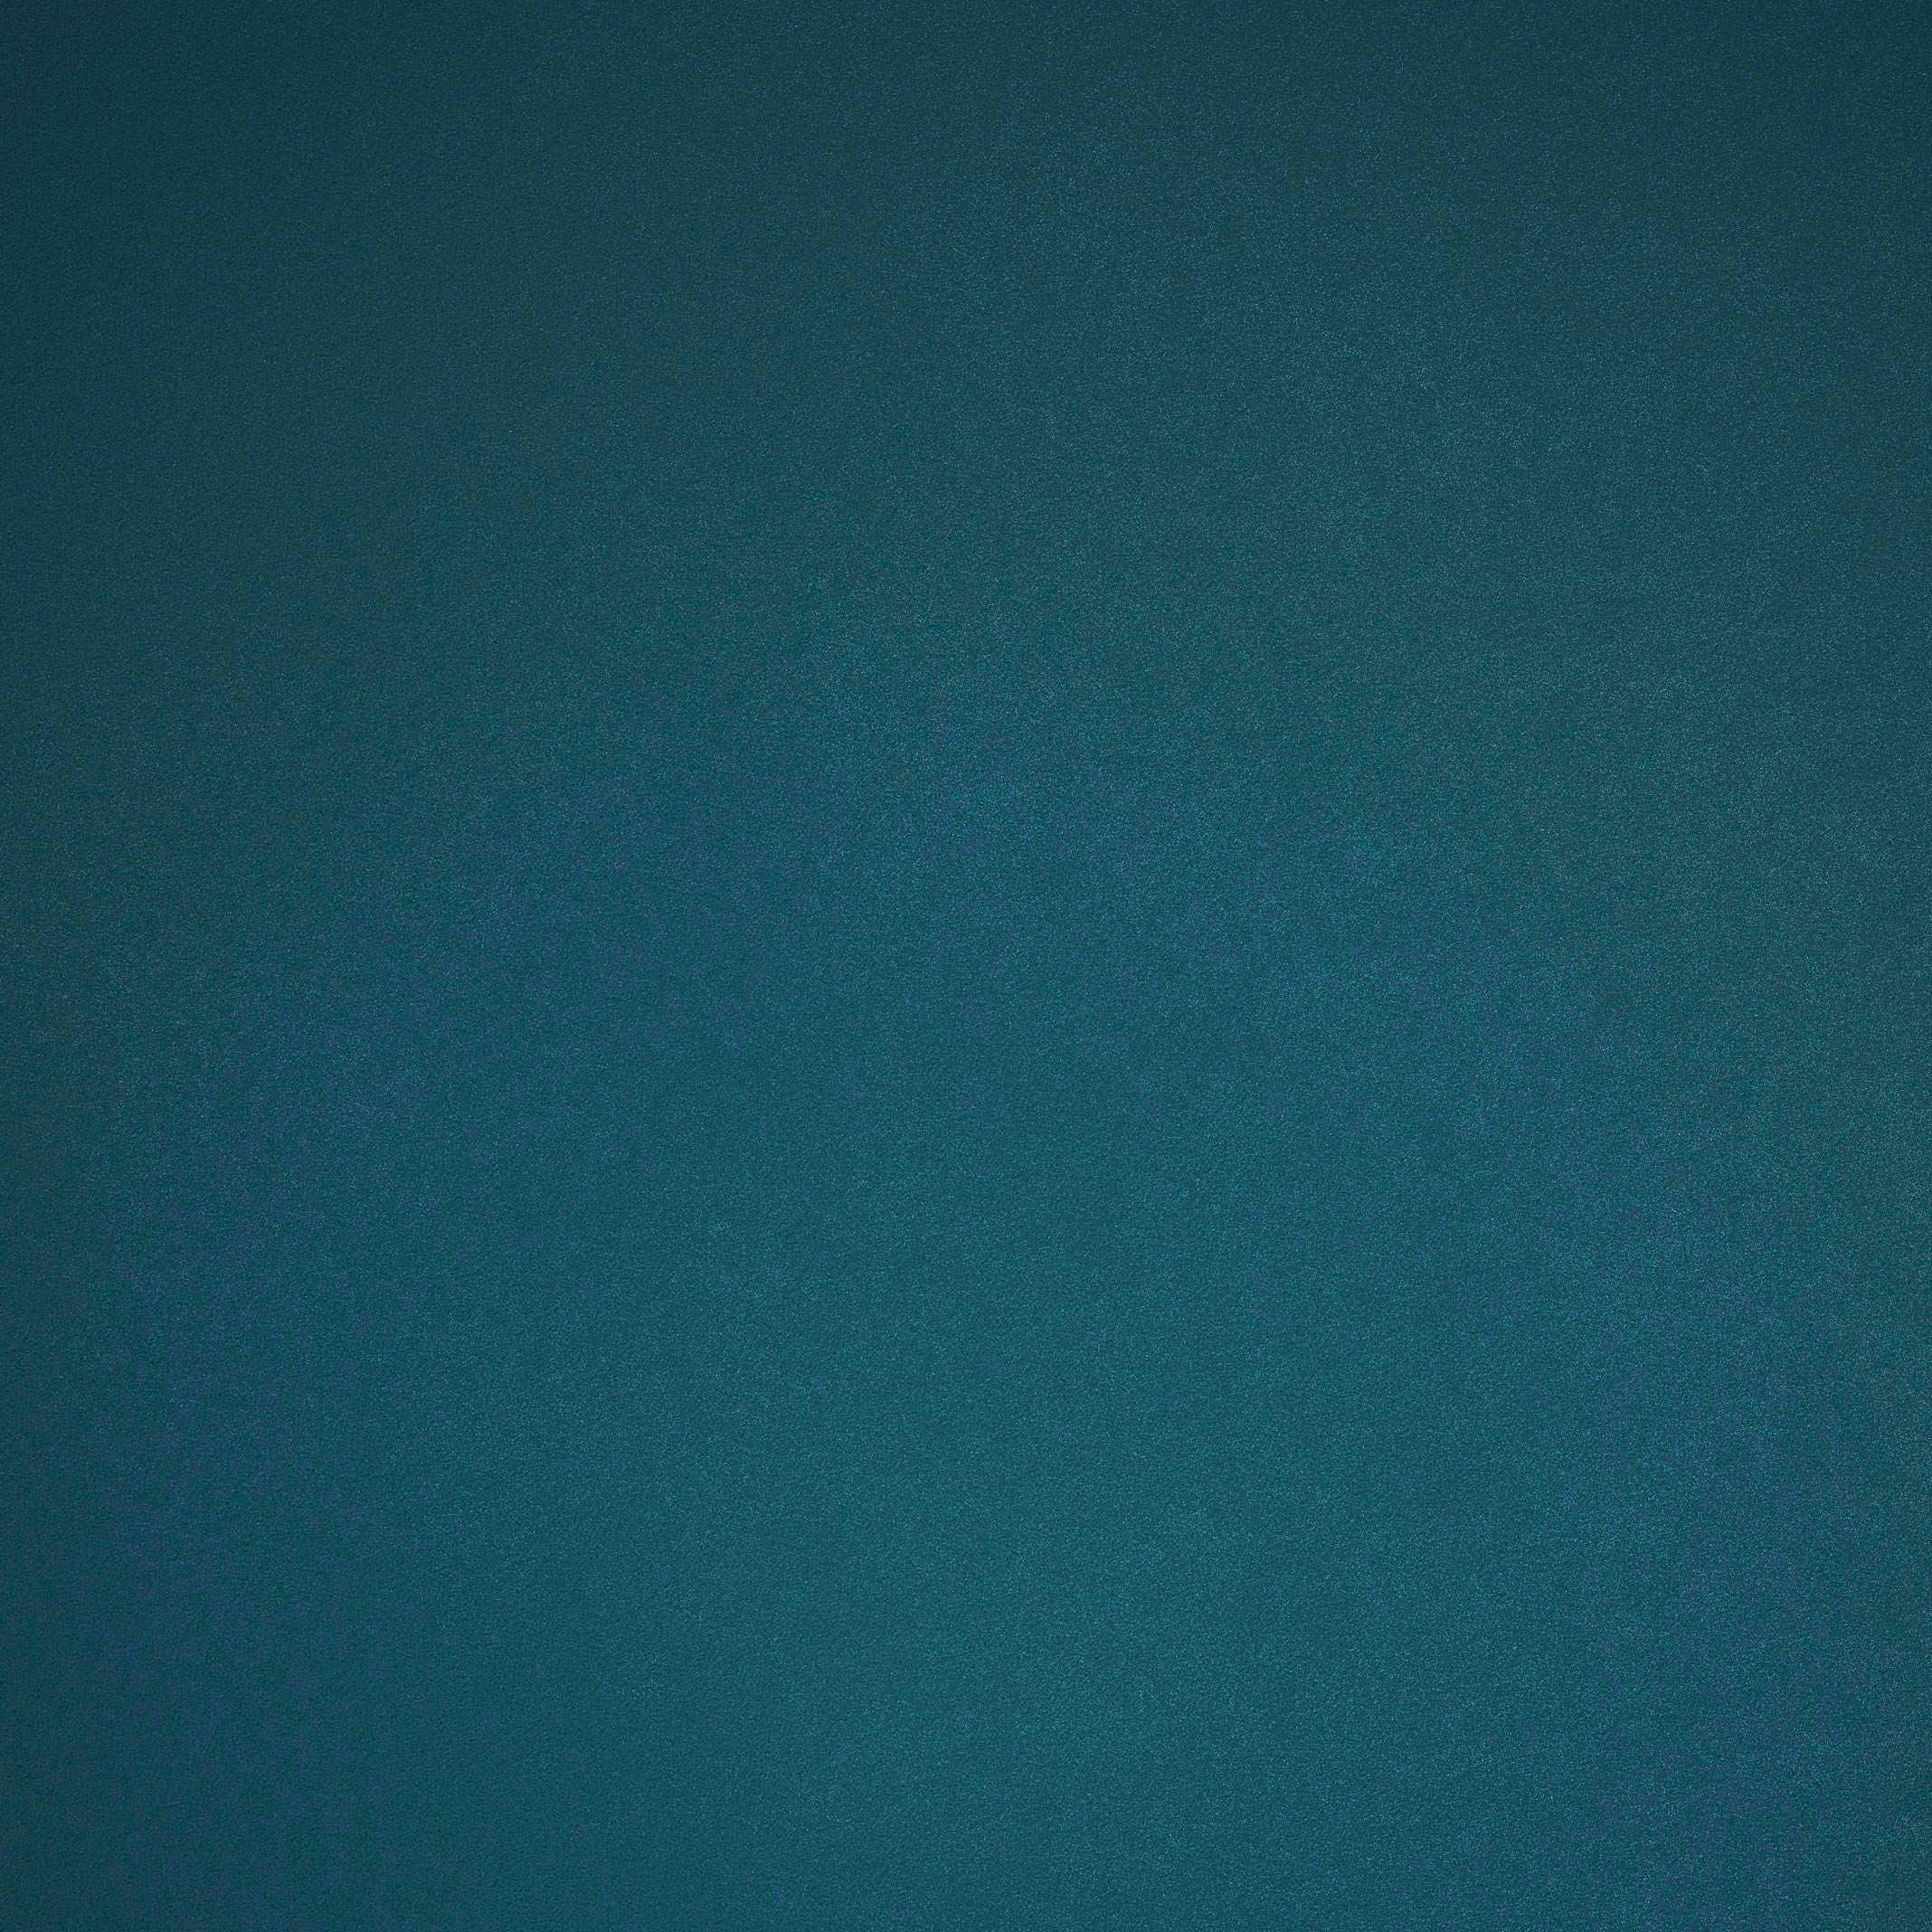 dark-blue-texture-wallpaper Â· Green